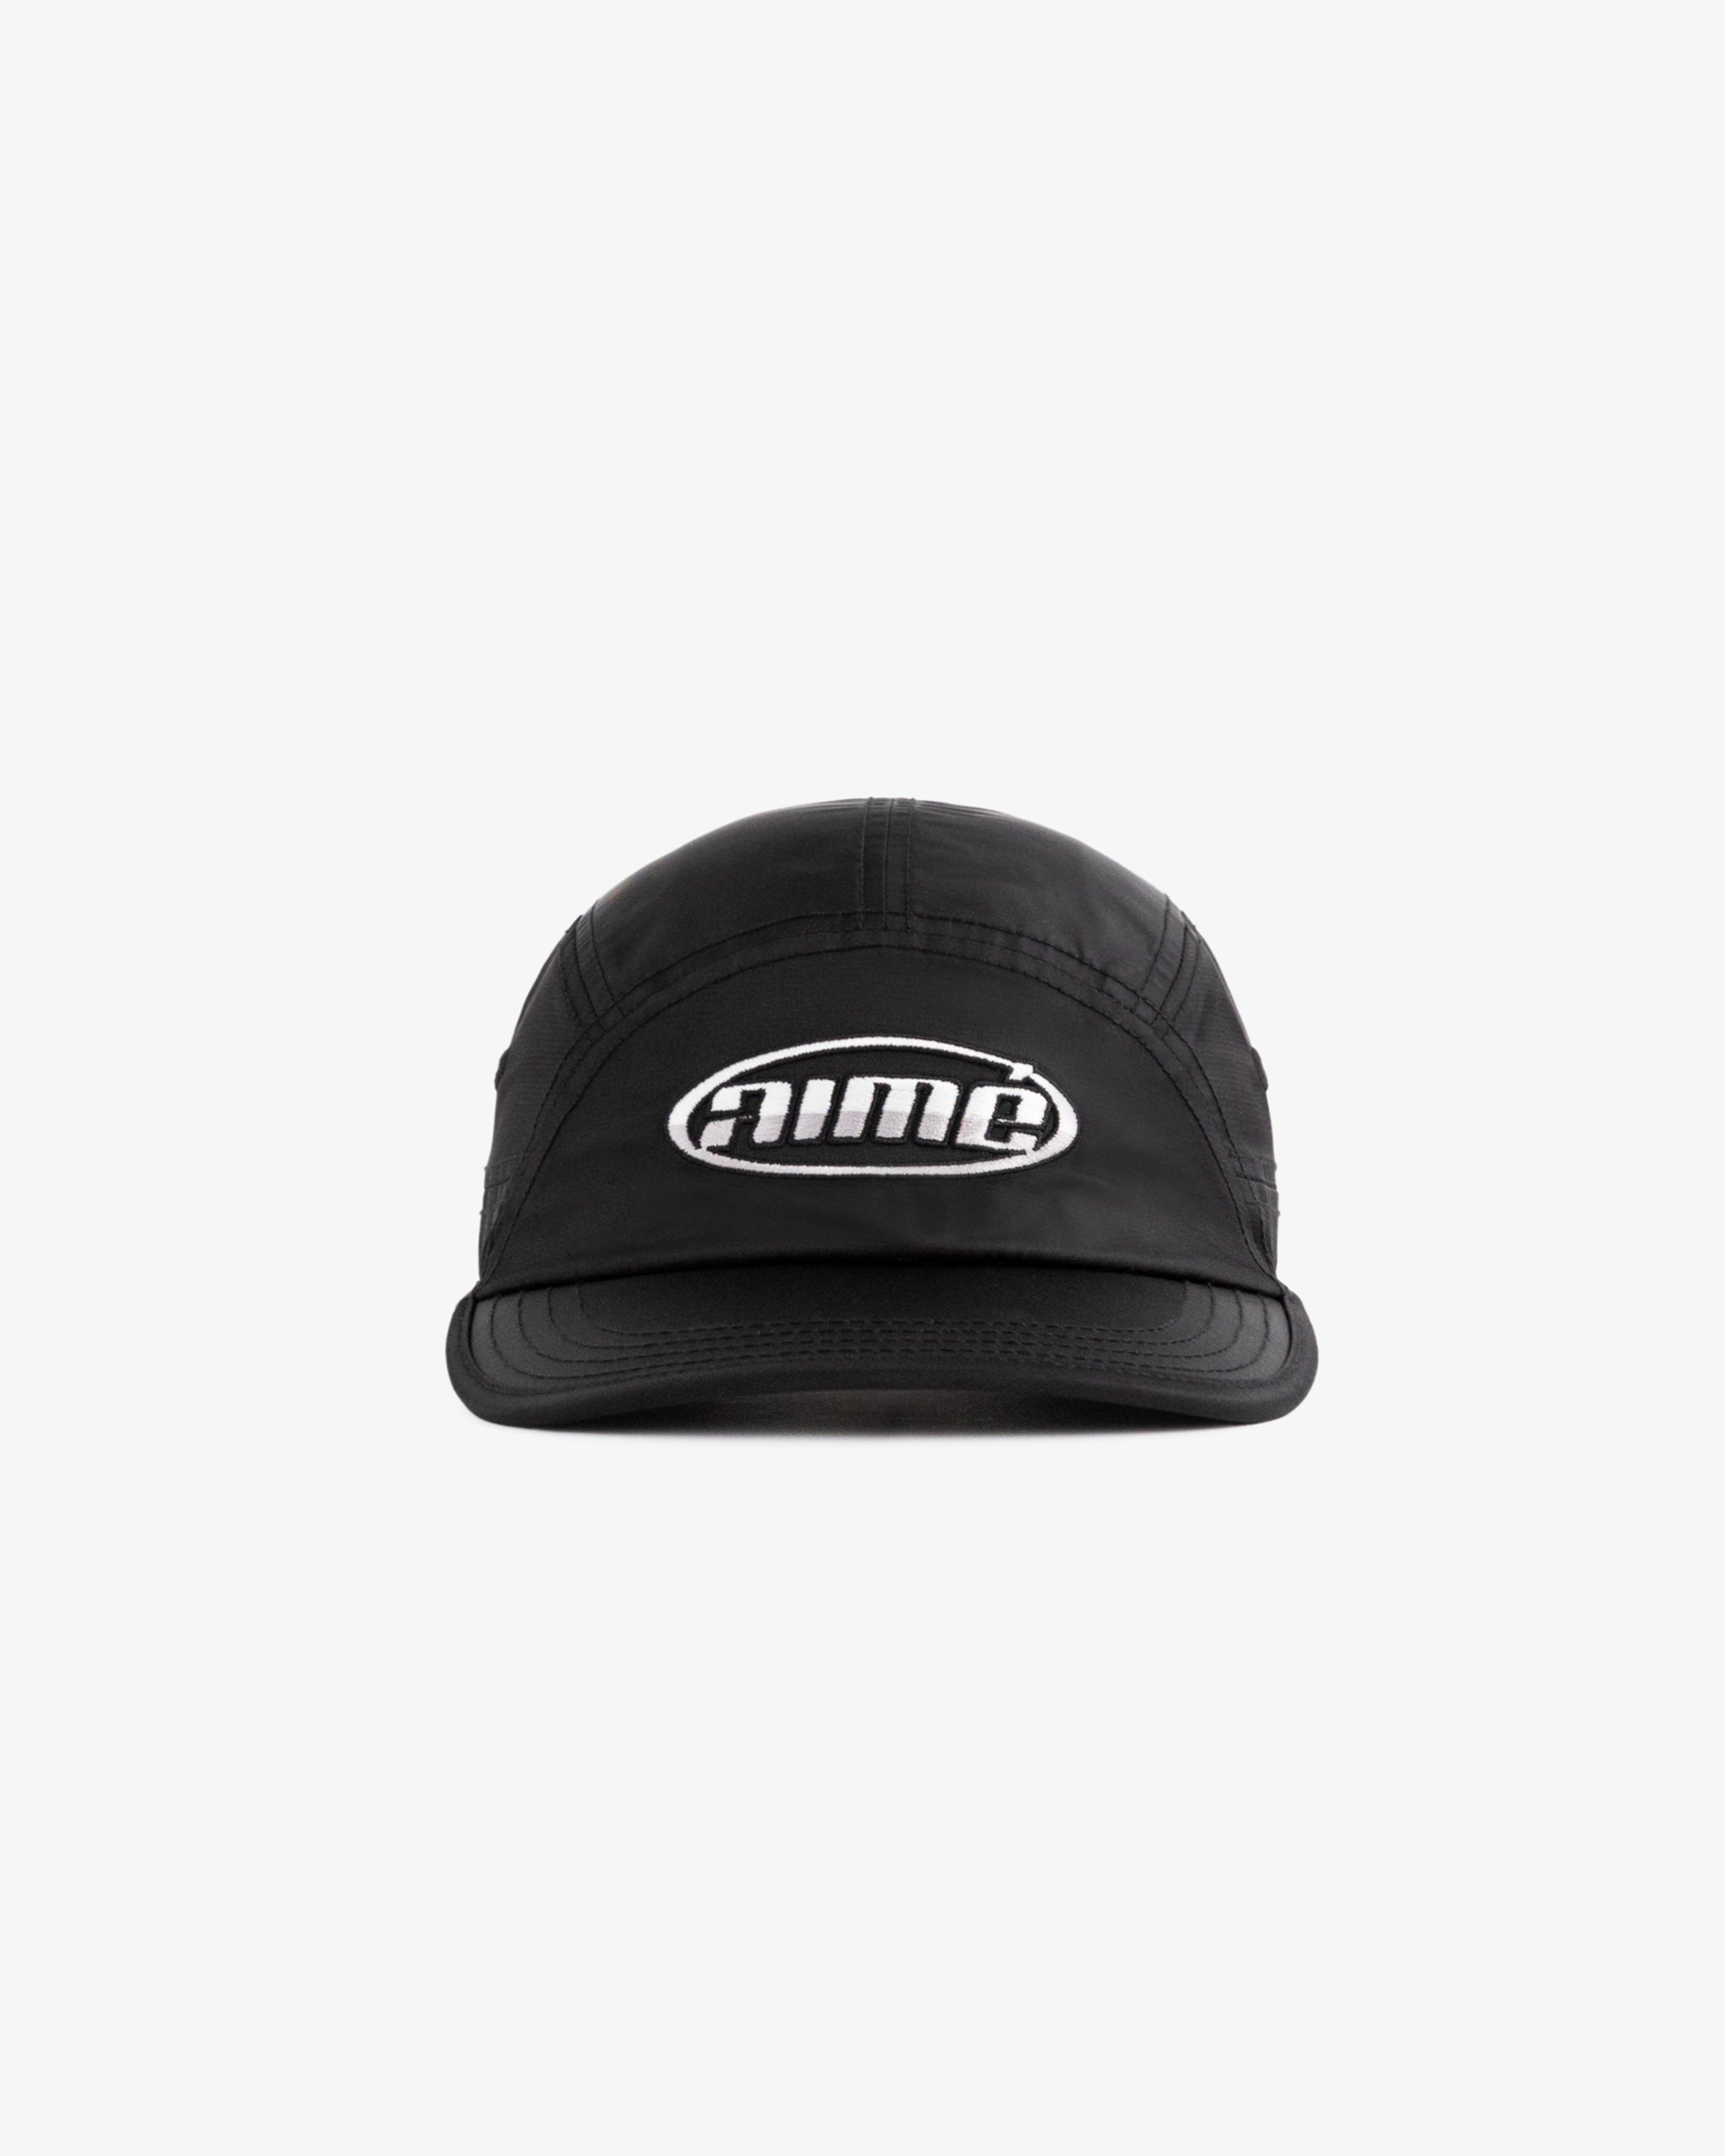 Chrome Logo Hat